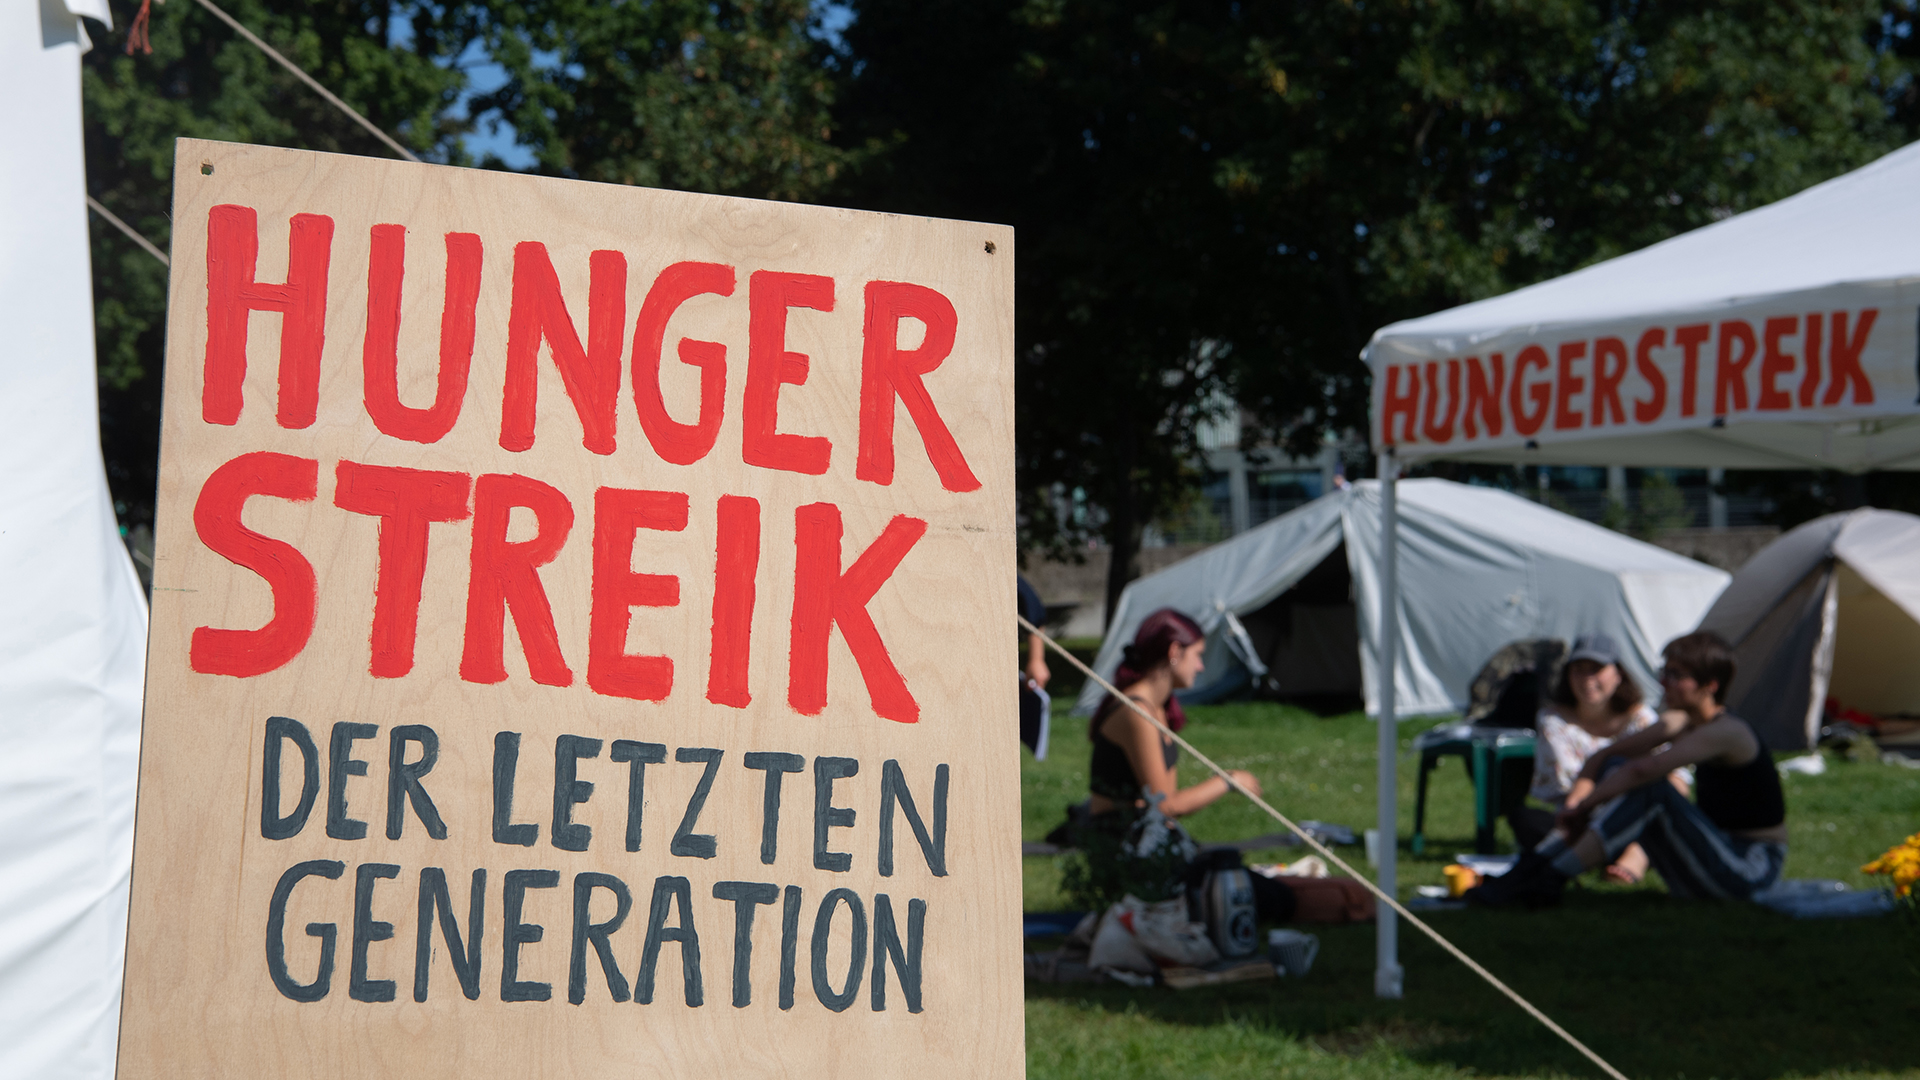 "Hungerstreik" steht in Großbuchstaben auf einem Schild im Camp der Klimaaktivisten. | dpa